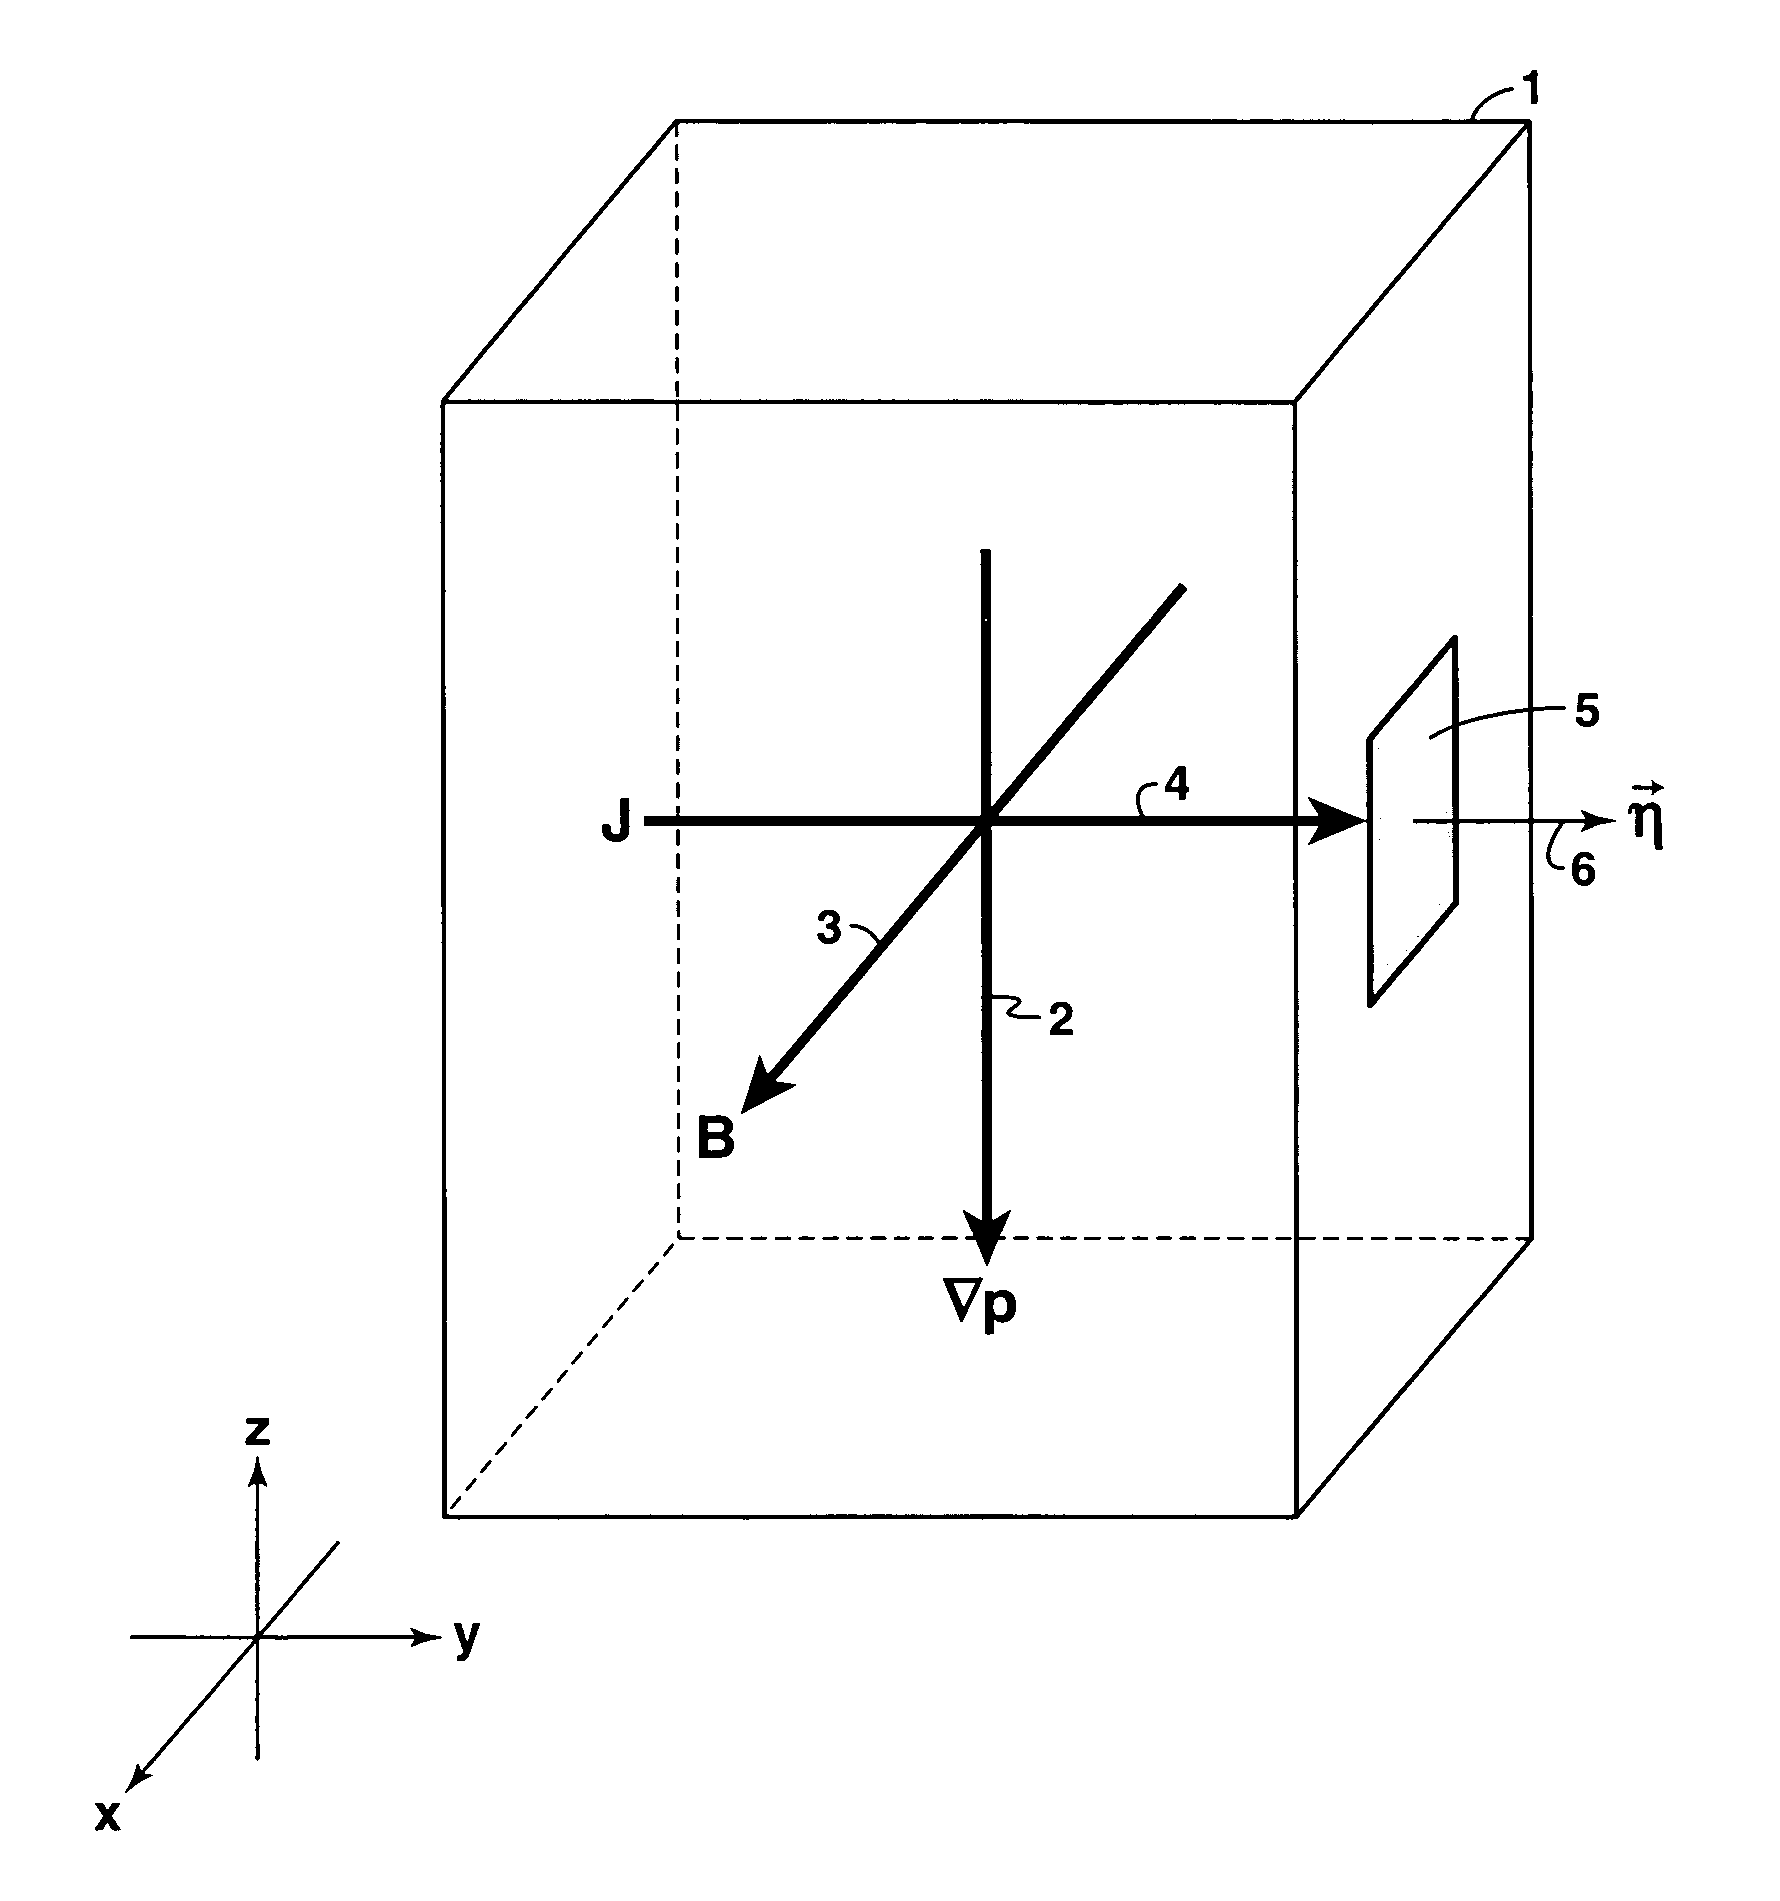 Diamagnetic current response transducer for sensing pressure gradient in a fluid medium